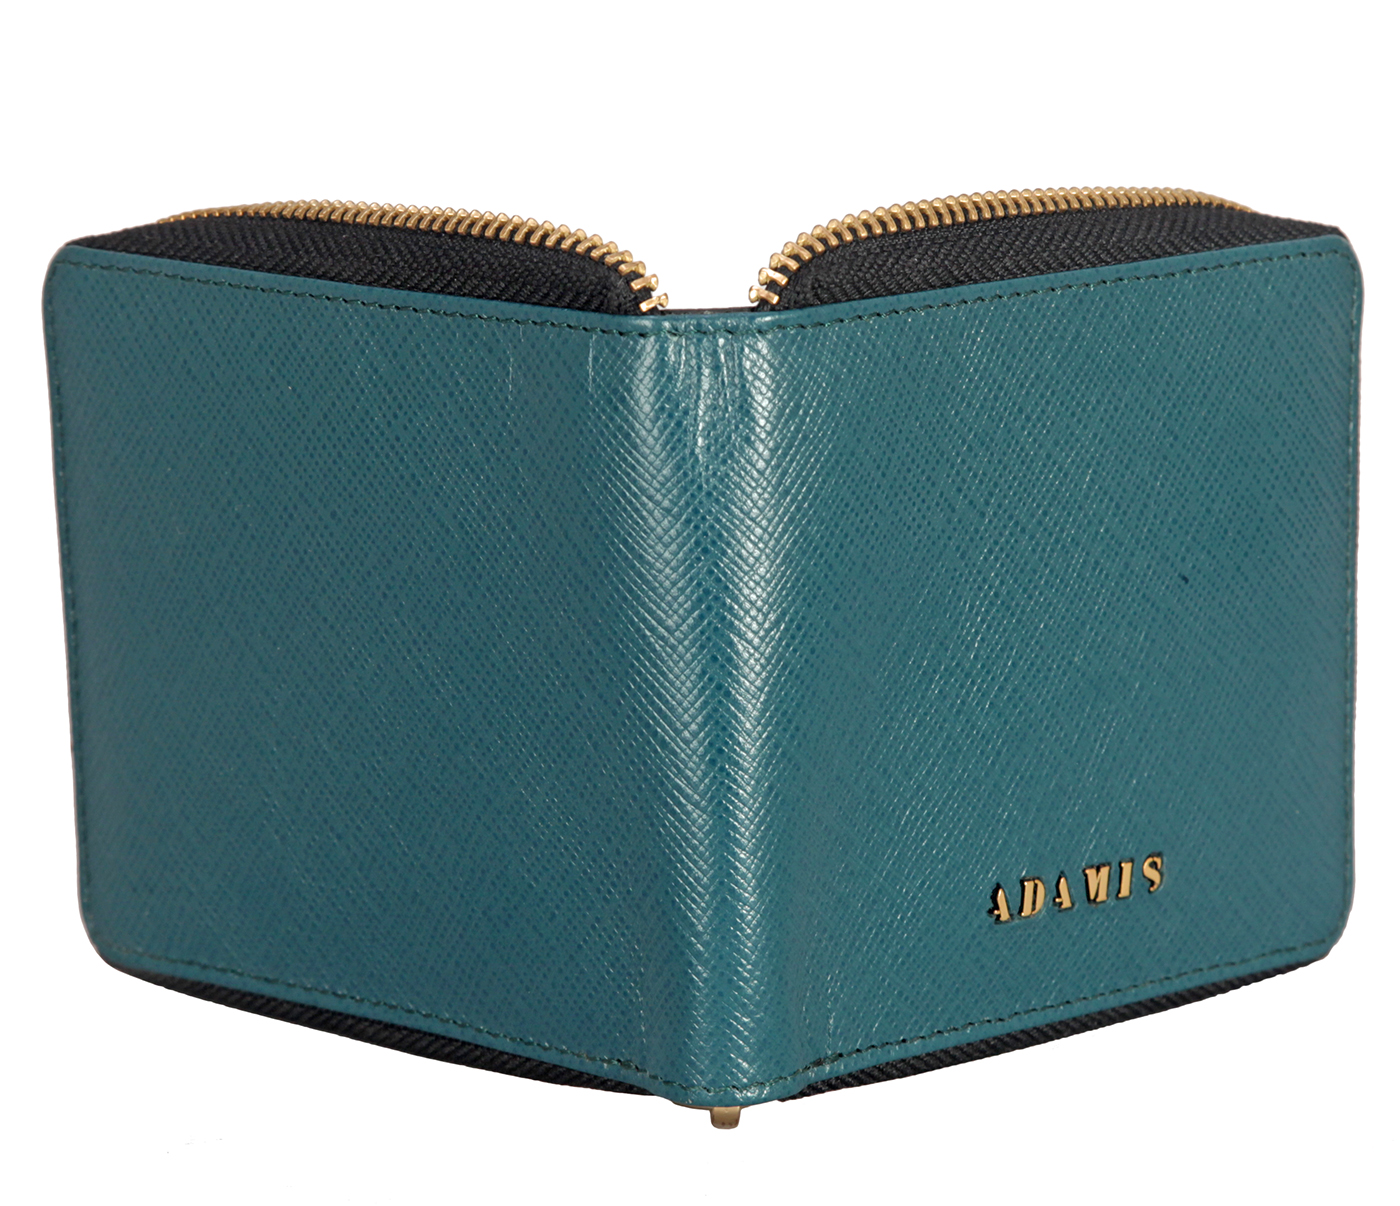 W325-Denzel-Men's bifold zip wallet in Genuine Leather - Green